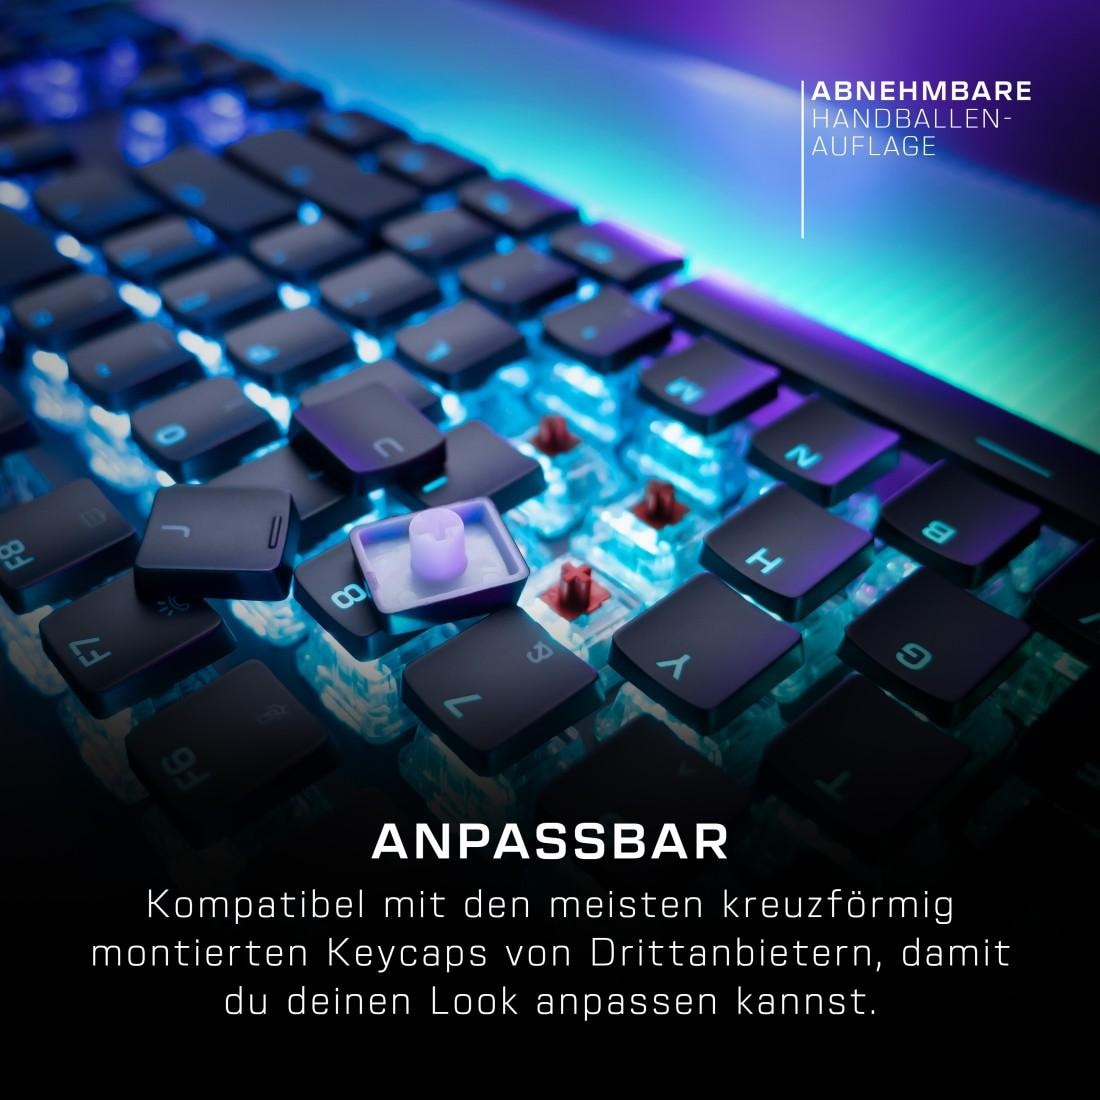 ROCCAT Gaming-Tastatur »Vulcan II Max, mechanisch, lineare Tasten«, (ausklappbare Füsse-Funktionstasten-Handgelenkauflage-Lautstärkeregler-Multimedia-Tasten-USB-Anschluss)